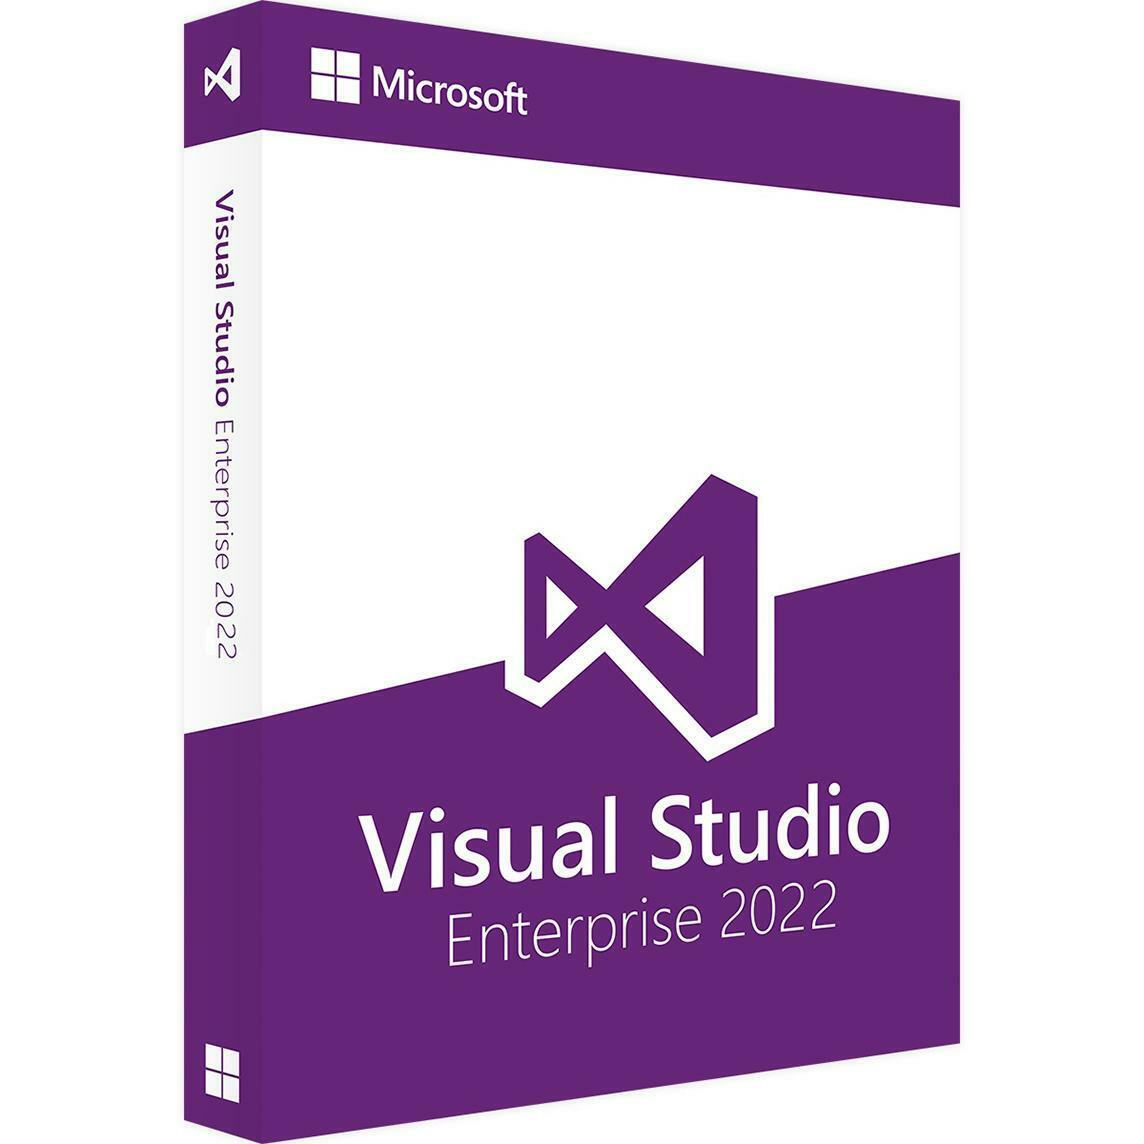 Visual Studio 2022 Enterprise Edition - Full License (Non-Subscription)